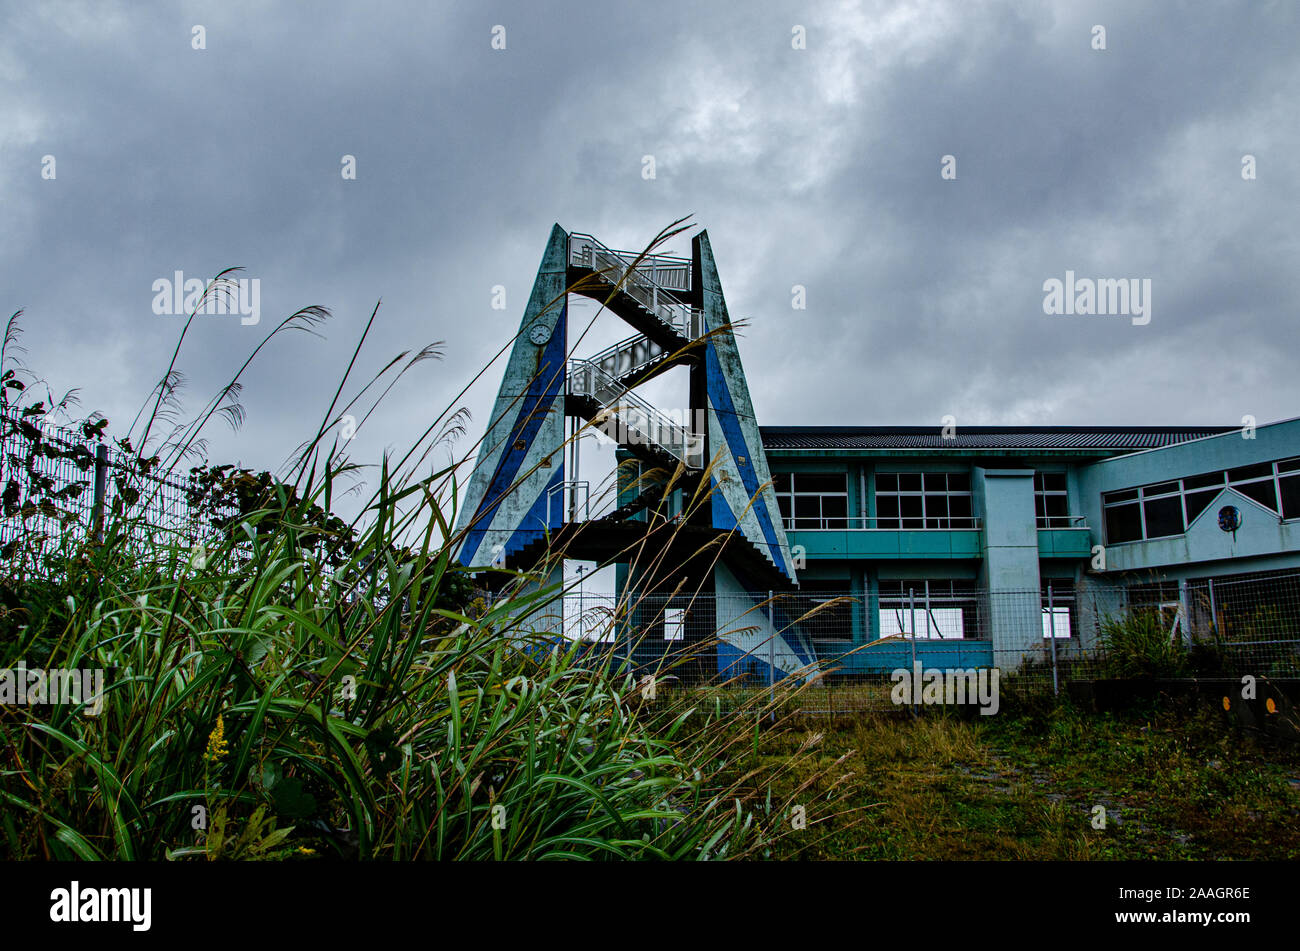 School after Fukushima tsunami, Japan Stock Photo